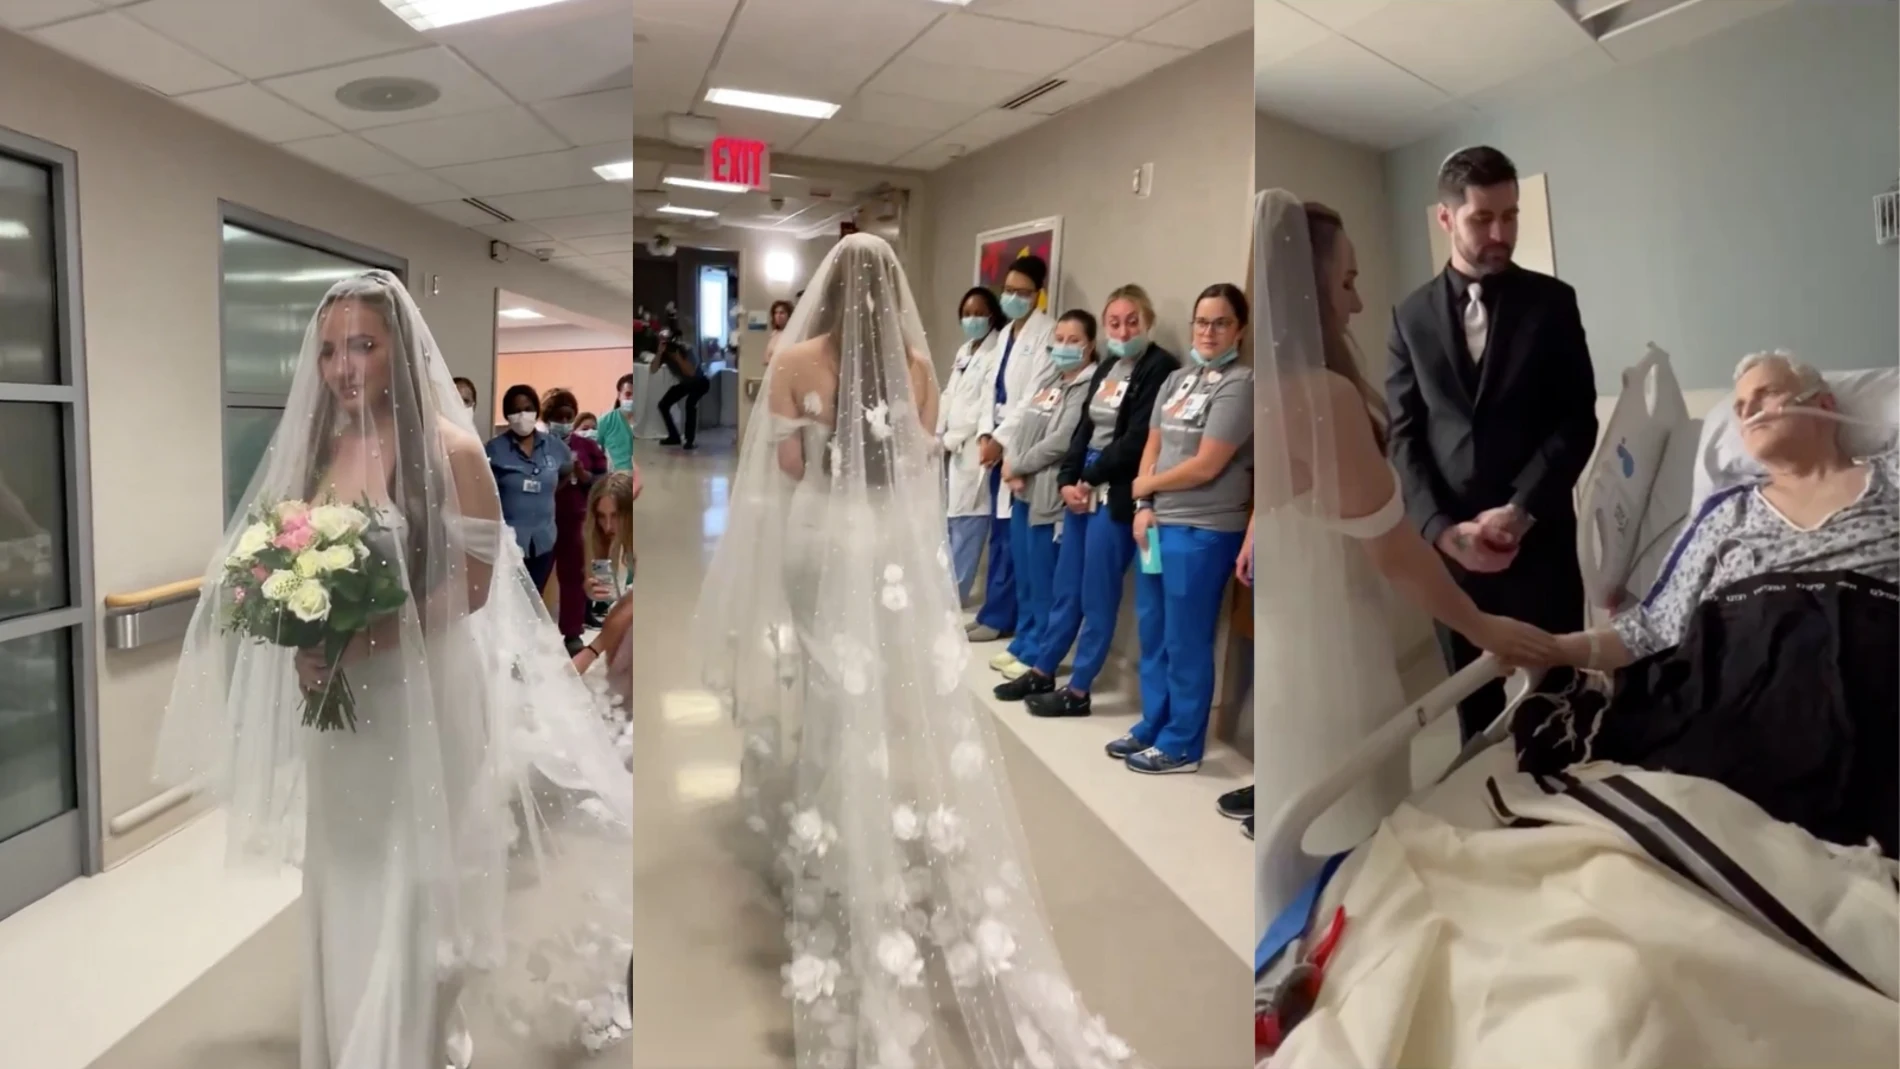 La boda de una mujer en el hospital para hacer realidad el deseo de su padre